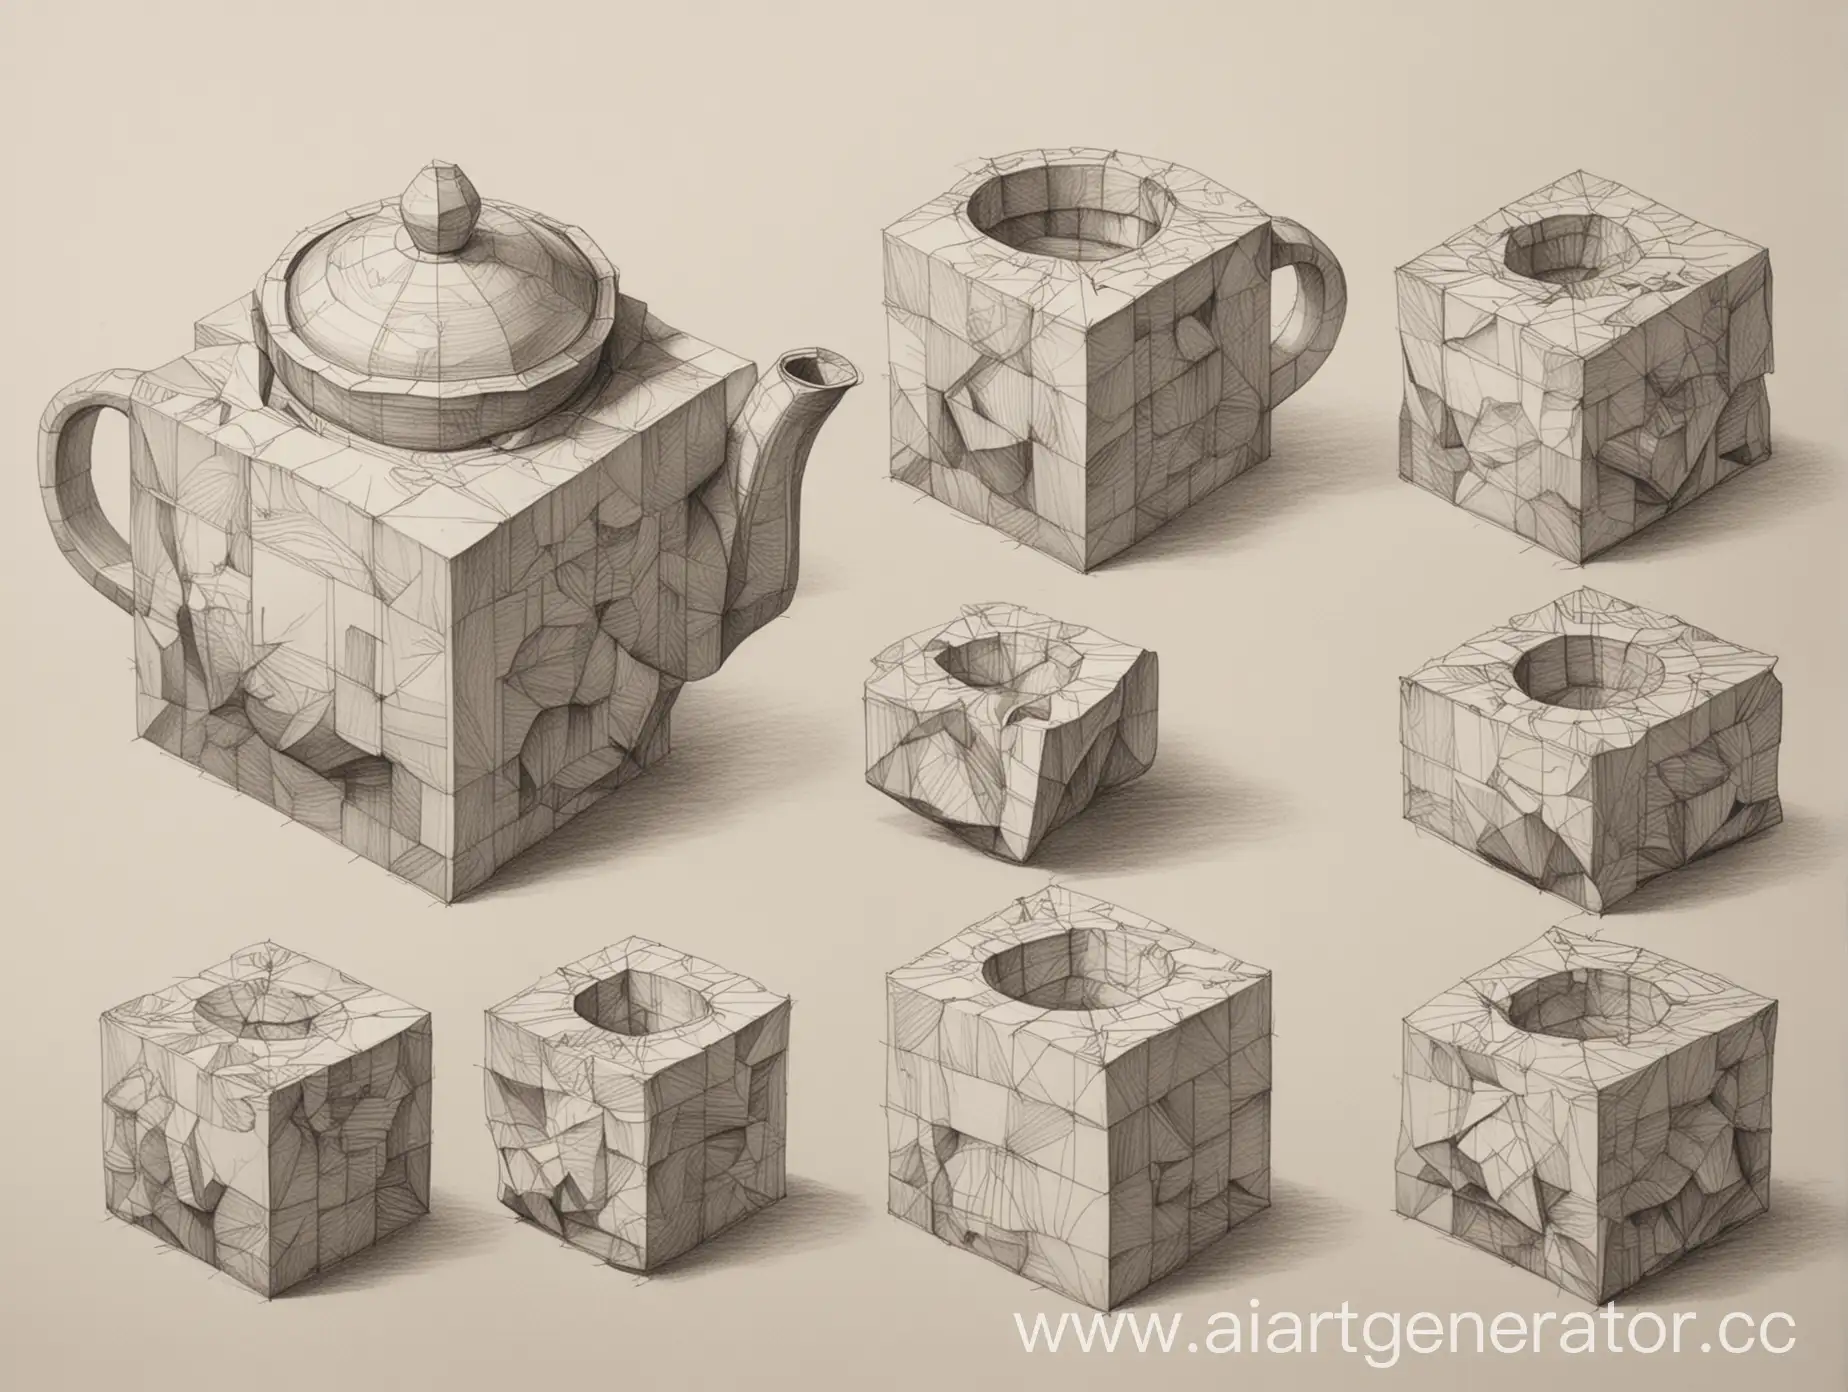 Нарисовать академический рисунок на основе формы чайник куба, кубов (различных объемов) выполнить - разработать новую форму чайника - который может быть не совсем пригоден для кипячения воды, но идея- является основой. Рисунок выполняется в объеме со штриховкой. 